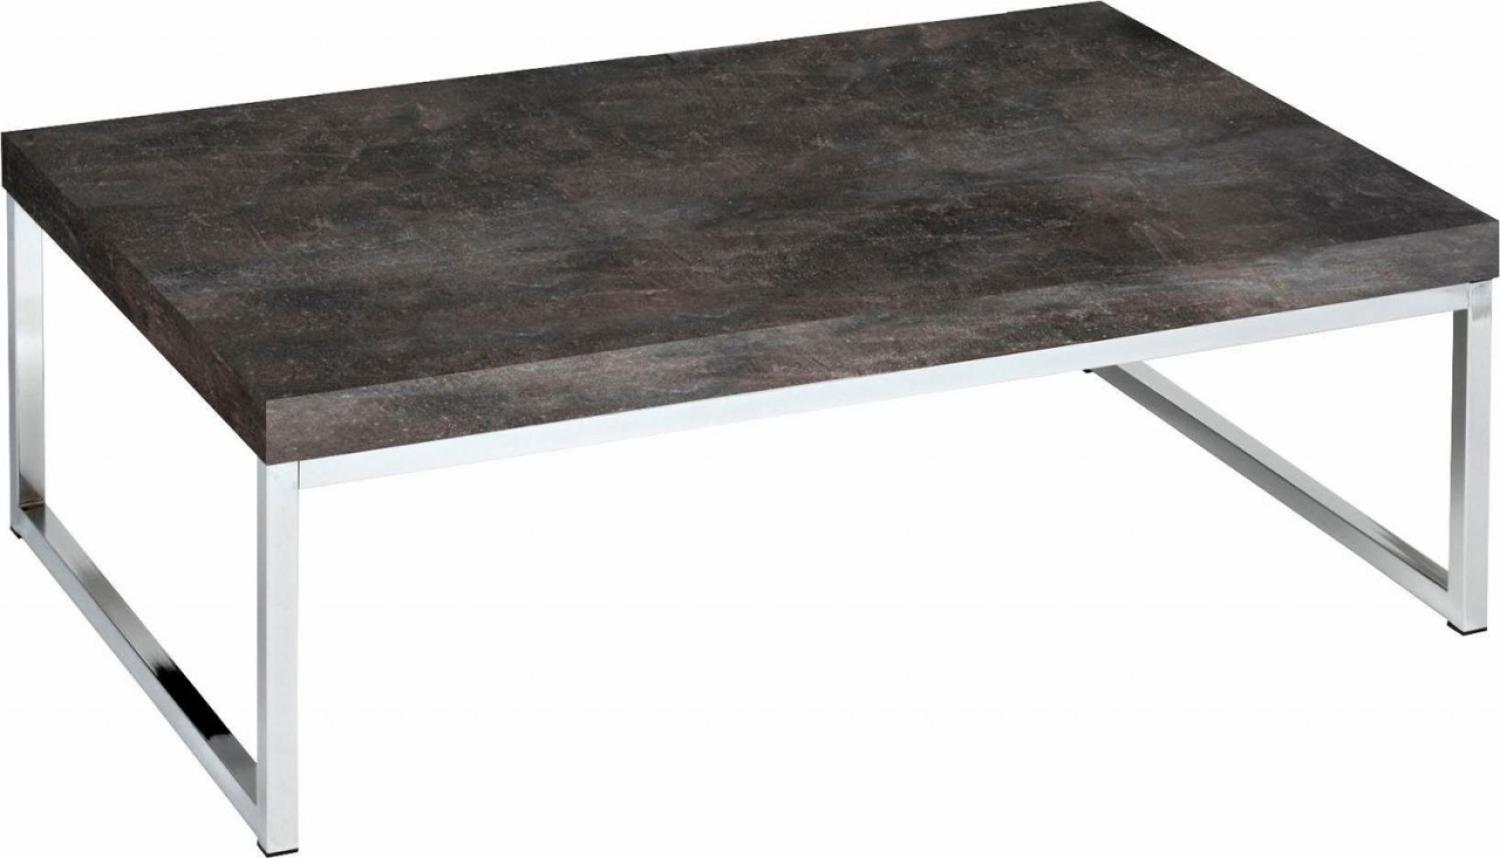 Couchtisch Wohnzimmertisch Tisch 107x67cm steinfarben dunkel Bild 1